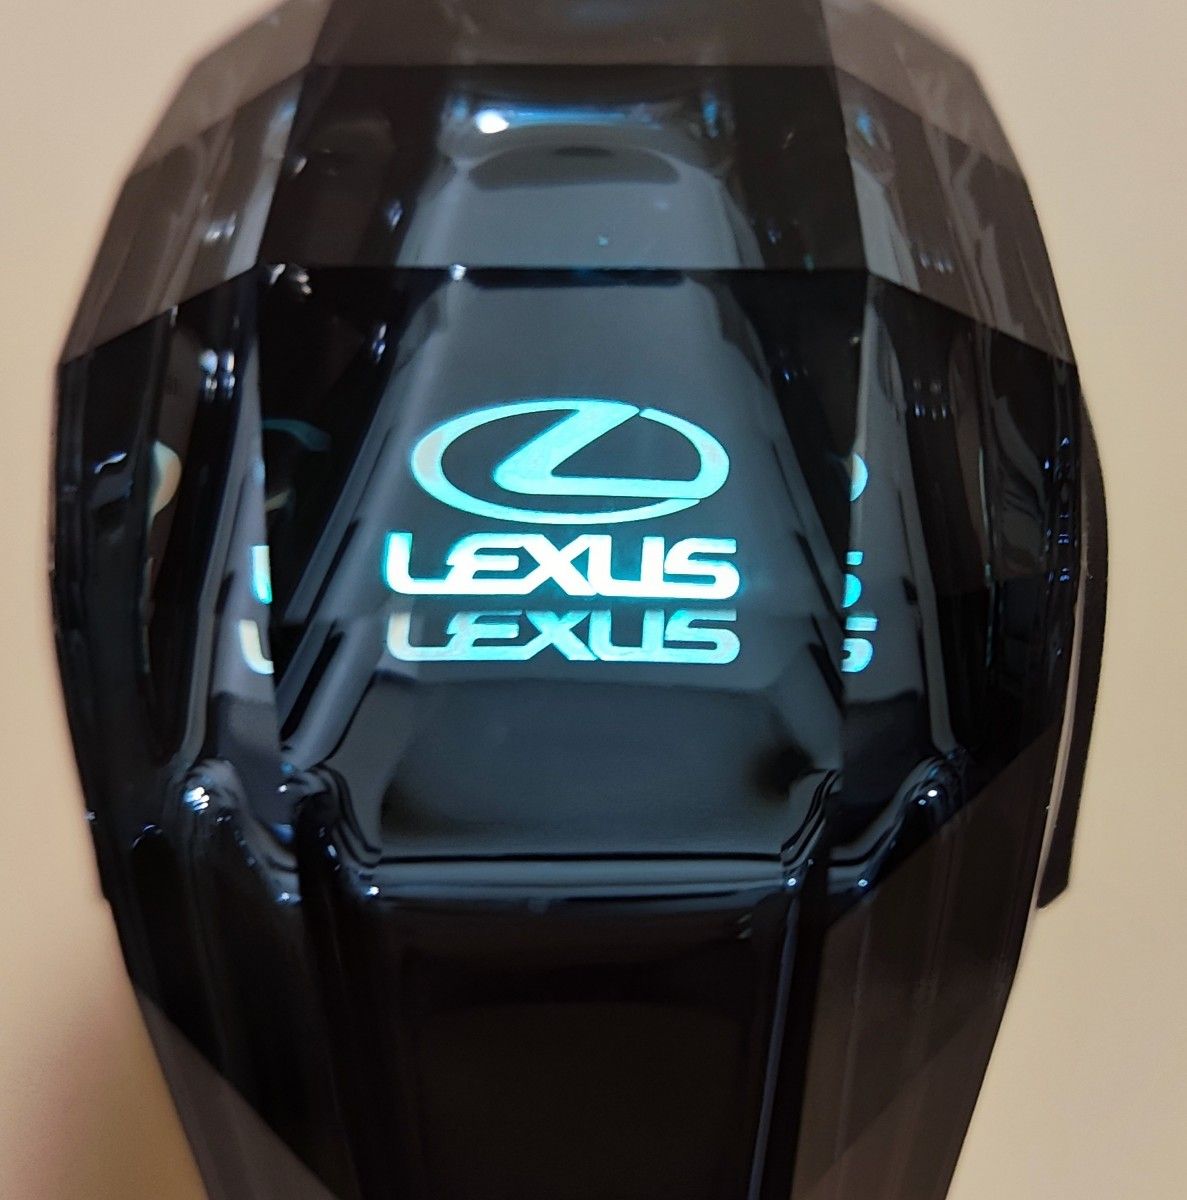 レクサス Lexus シフトノブ シフトレバー イルミネーション 7色LED点灯 ハンドボールクリスタルシフト